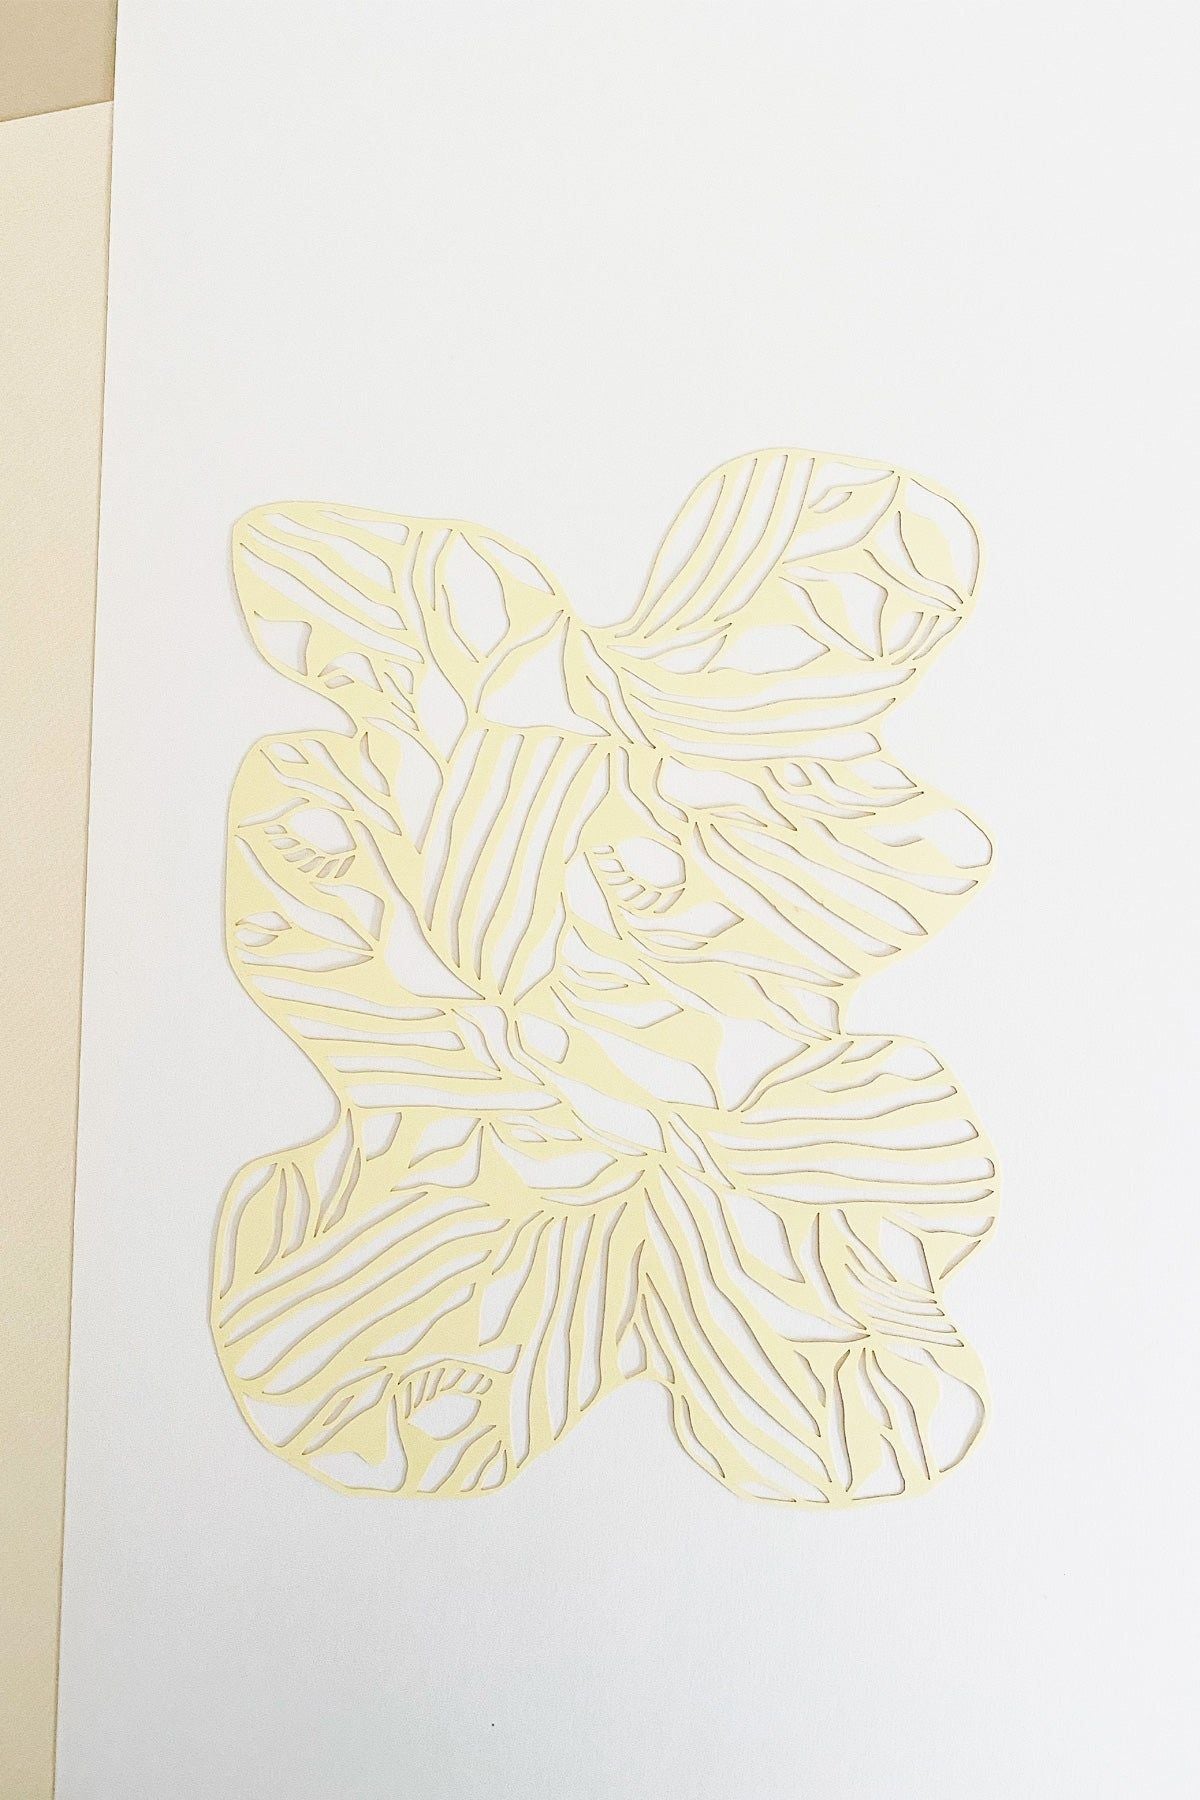 Studio over PaperCut A4 organische rechthoek, geel